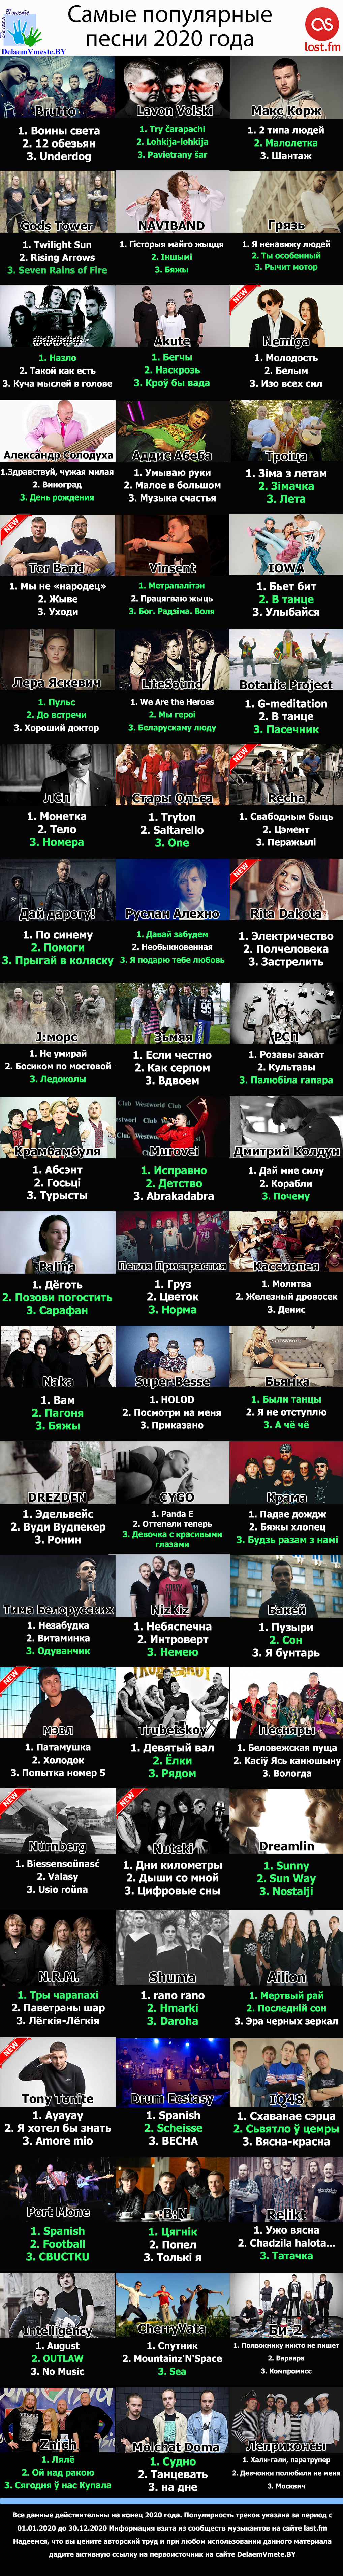 Самые известные белорусские песни 2020 год